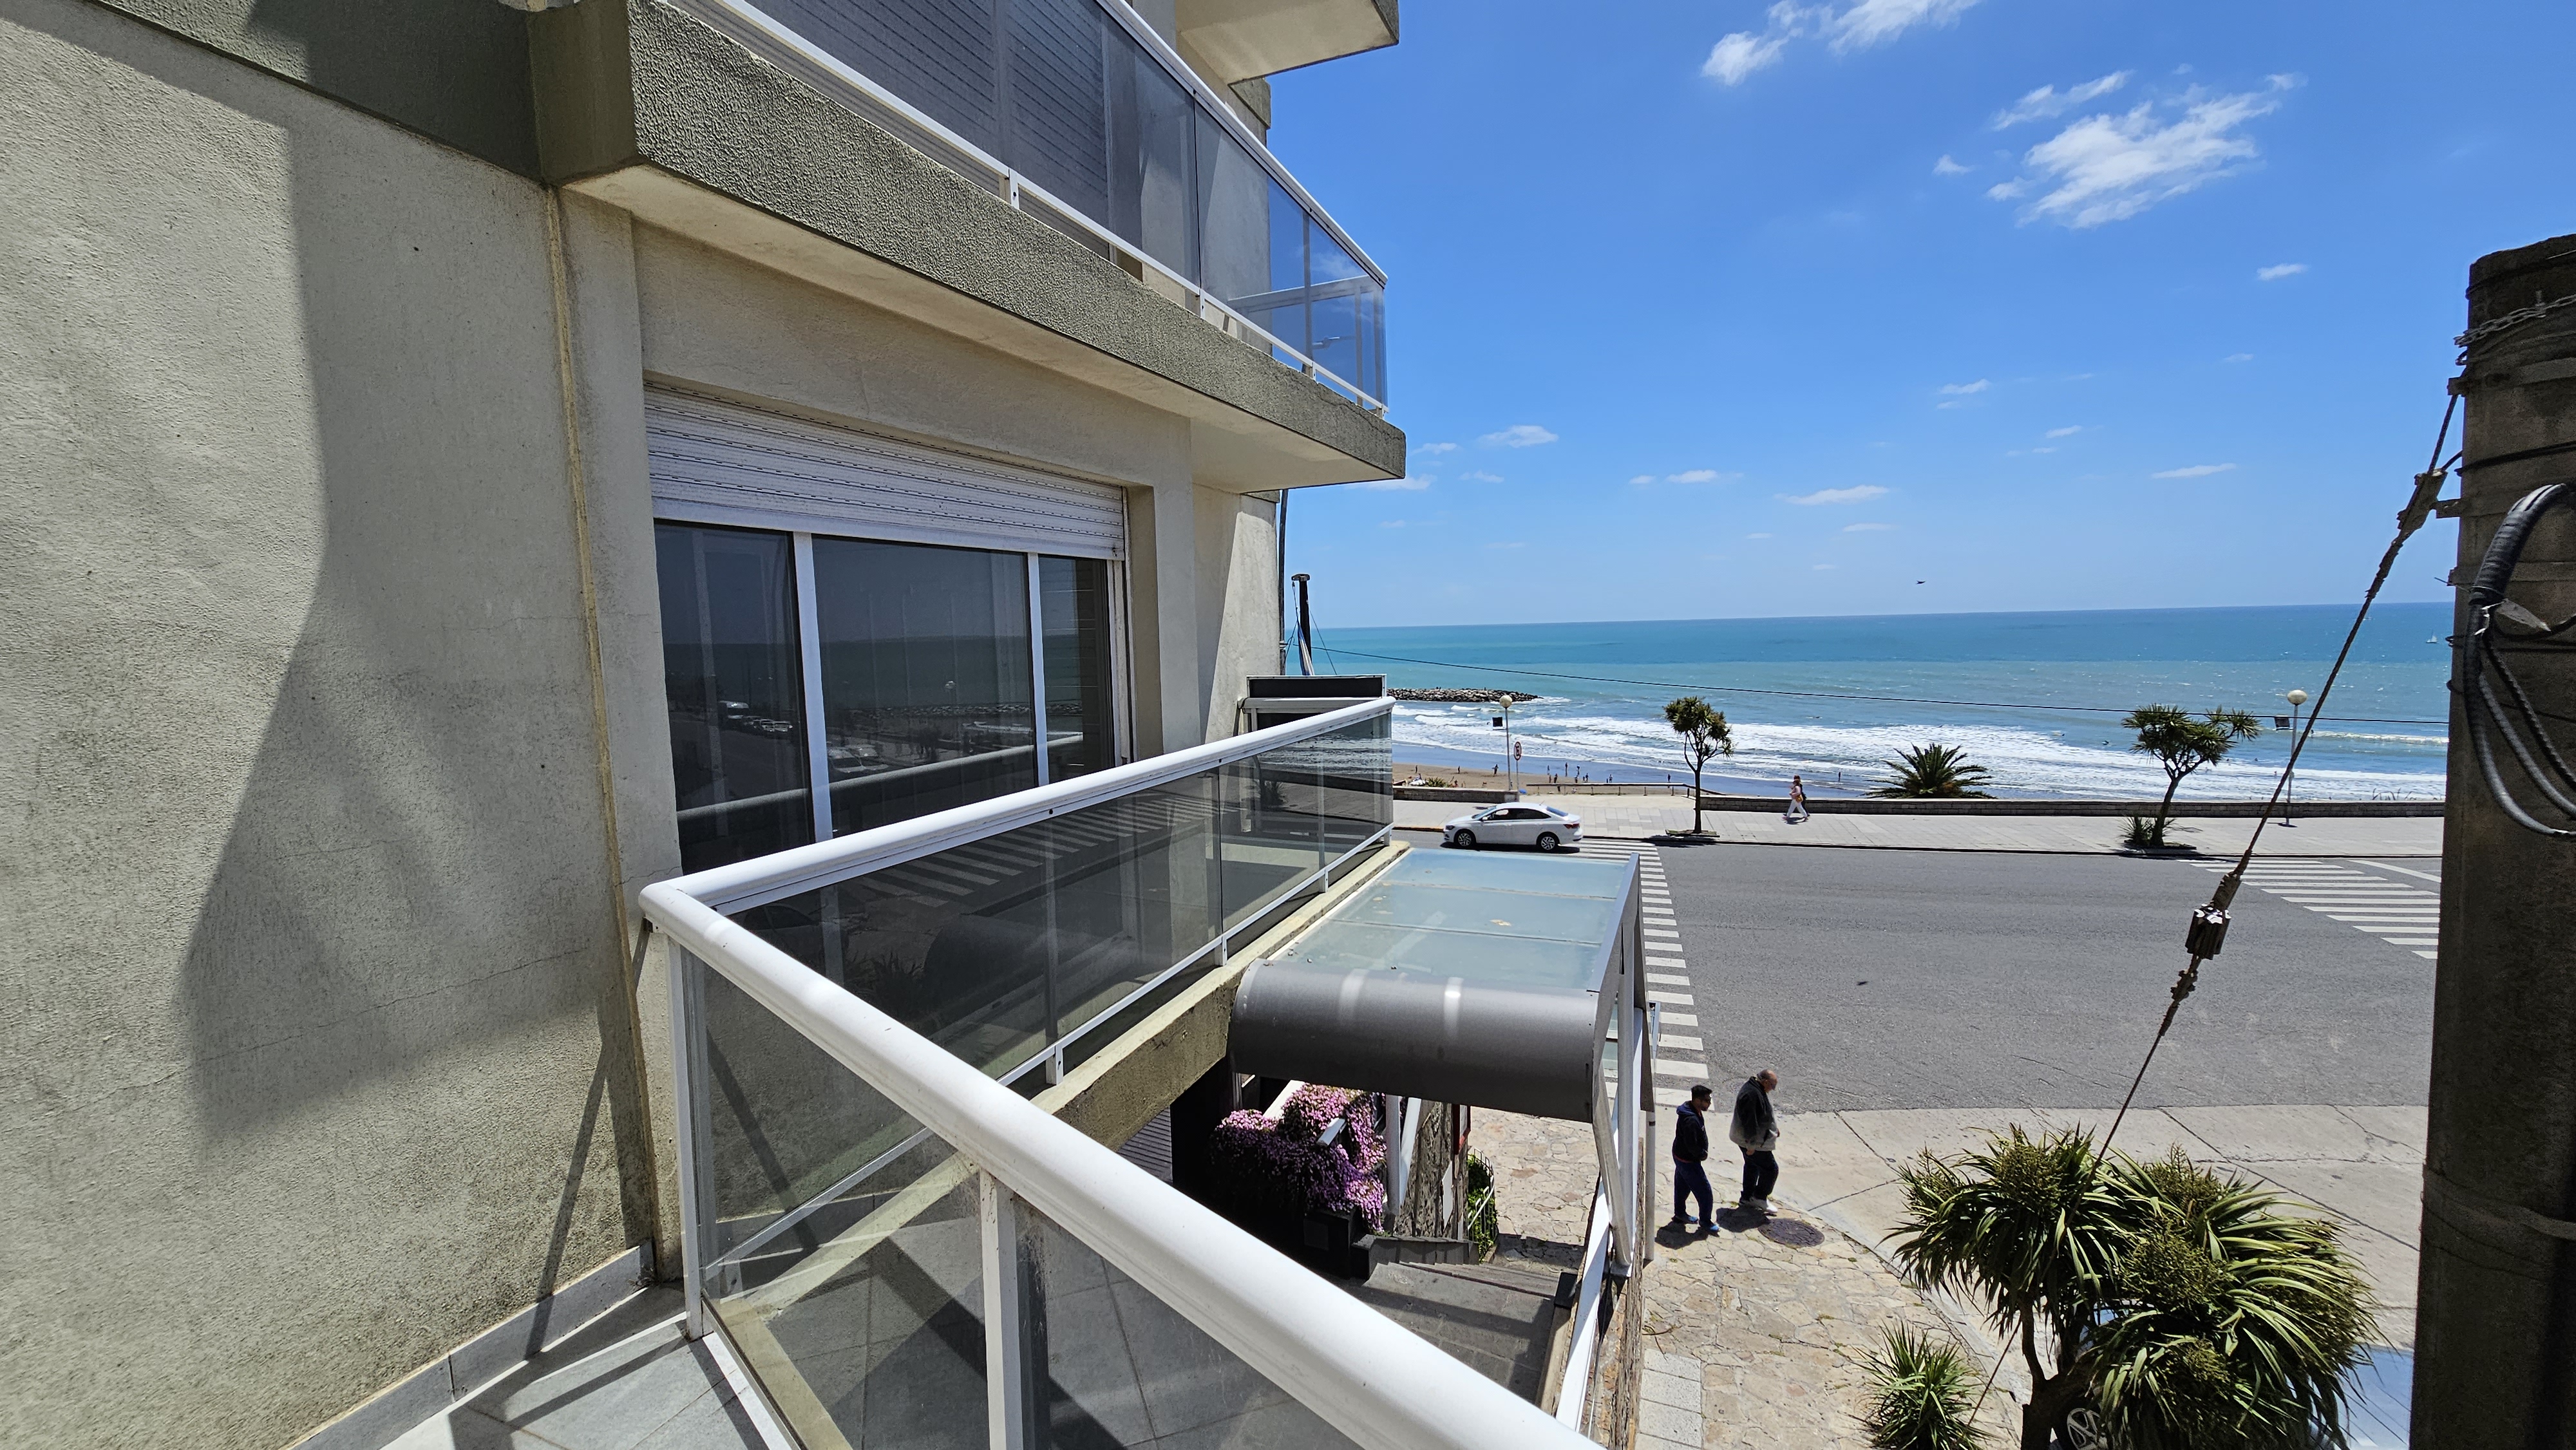 En venta departamento de 3 ambientes con vista al mar. Playa Varese